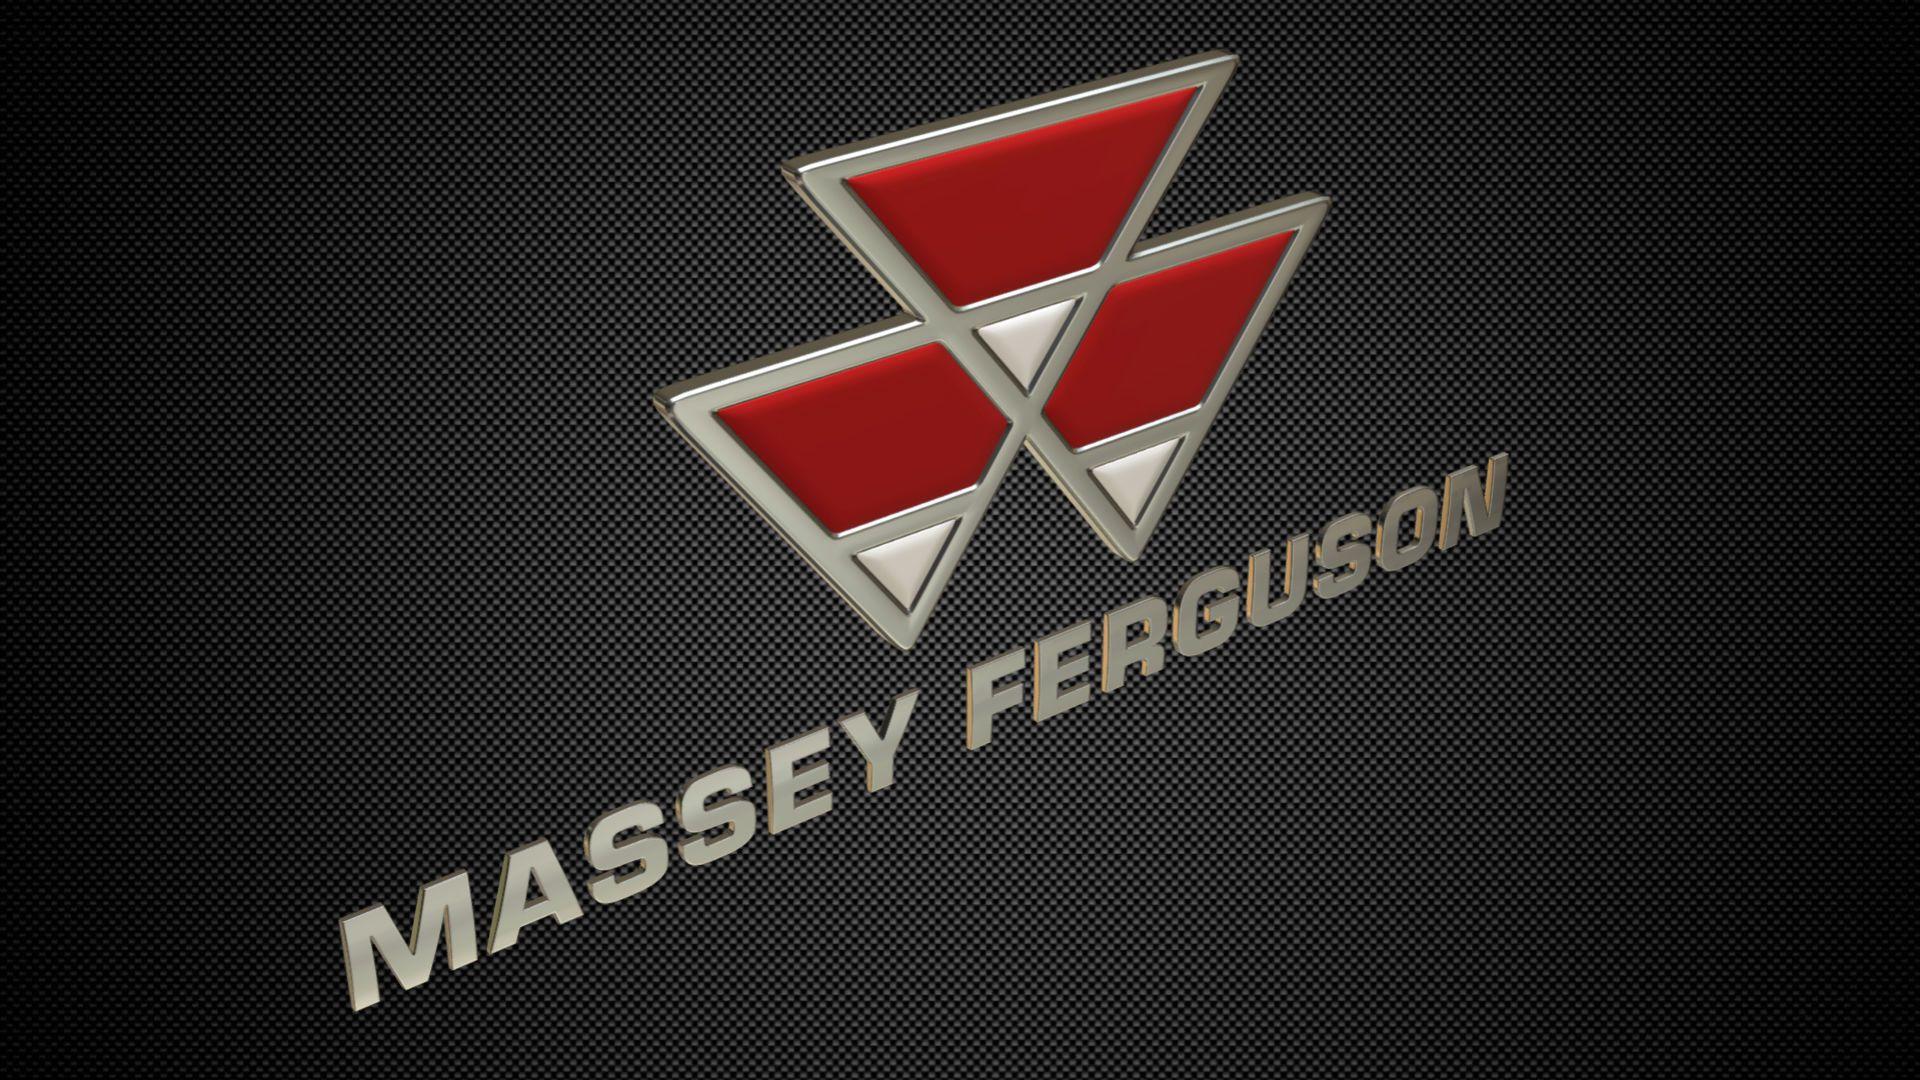 Massey Ferguson Logo - 3D model massey ferguson logo